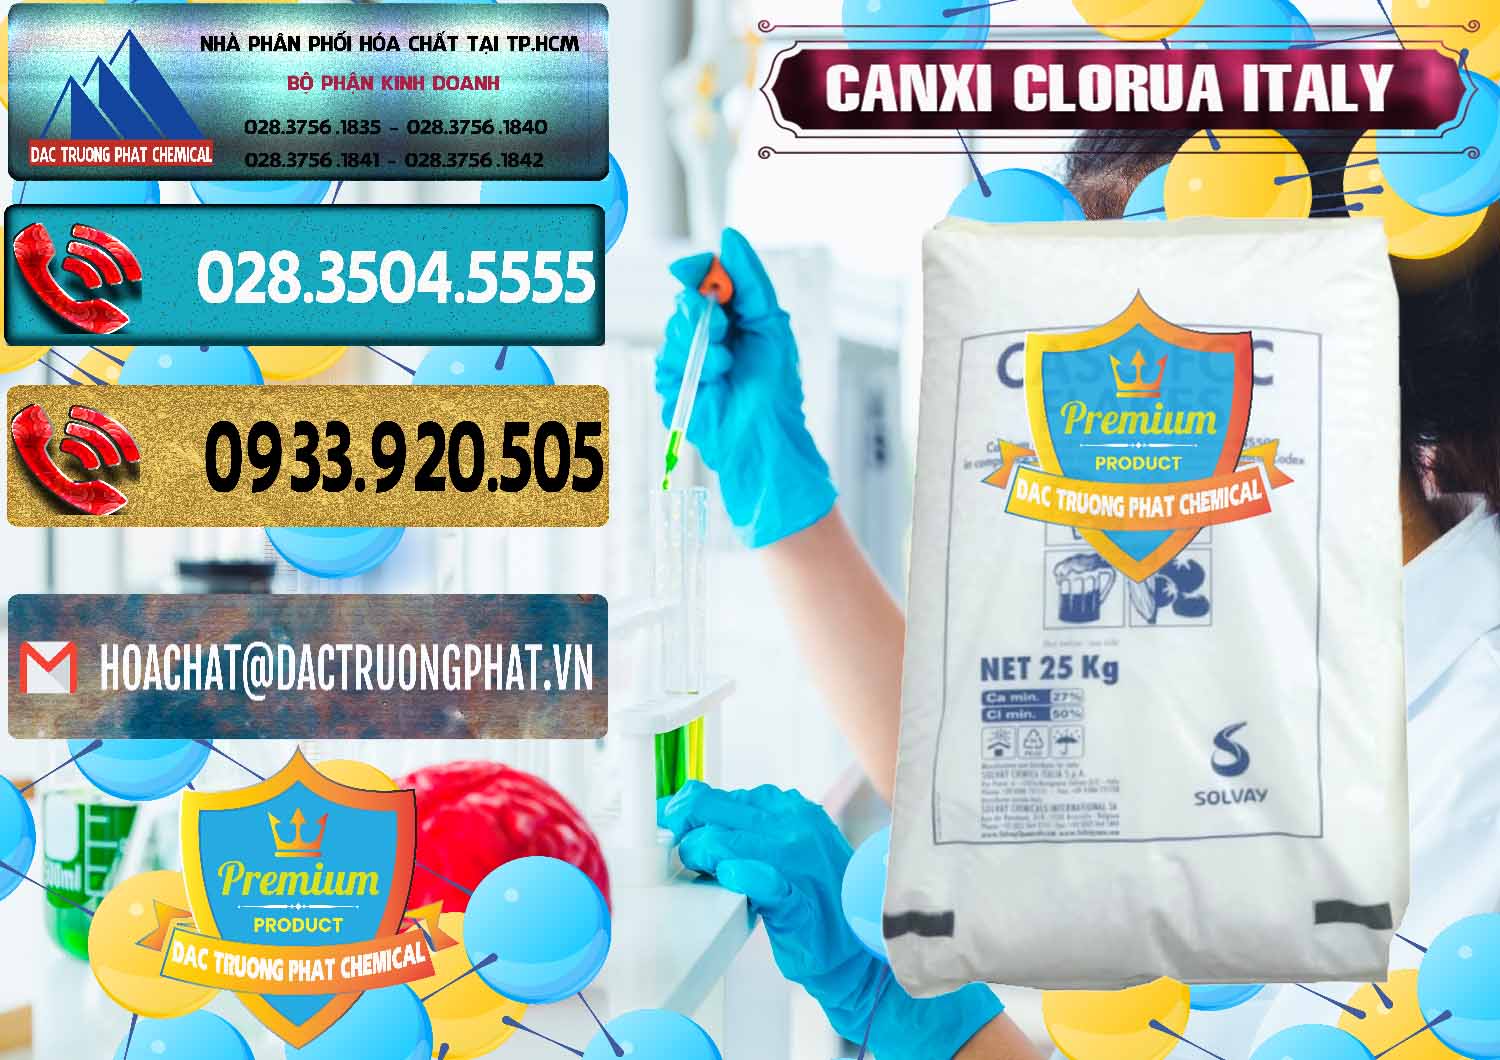 Đơn vị nhập khẩu ( bán ) CaCl2 – Canxi Clorua Food Grade Ý Italy - 0435 - Đơn vị phân phối ( bán ) hóa chất tại TP.HCM - hoachatdetnhuom.com